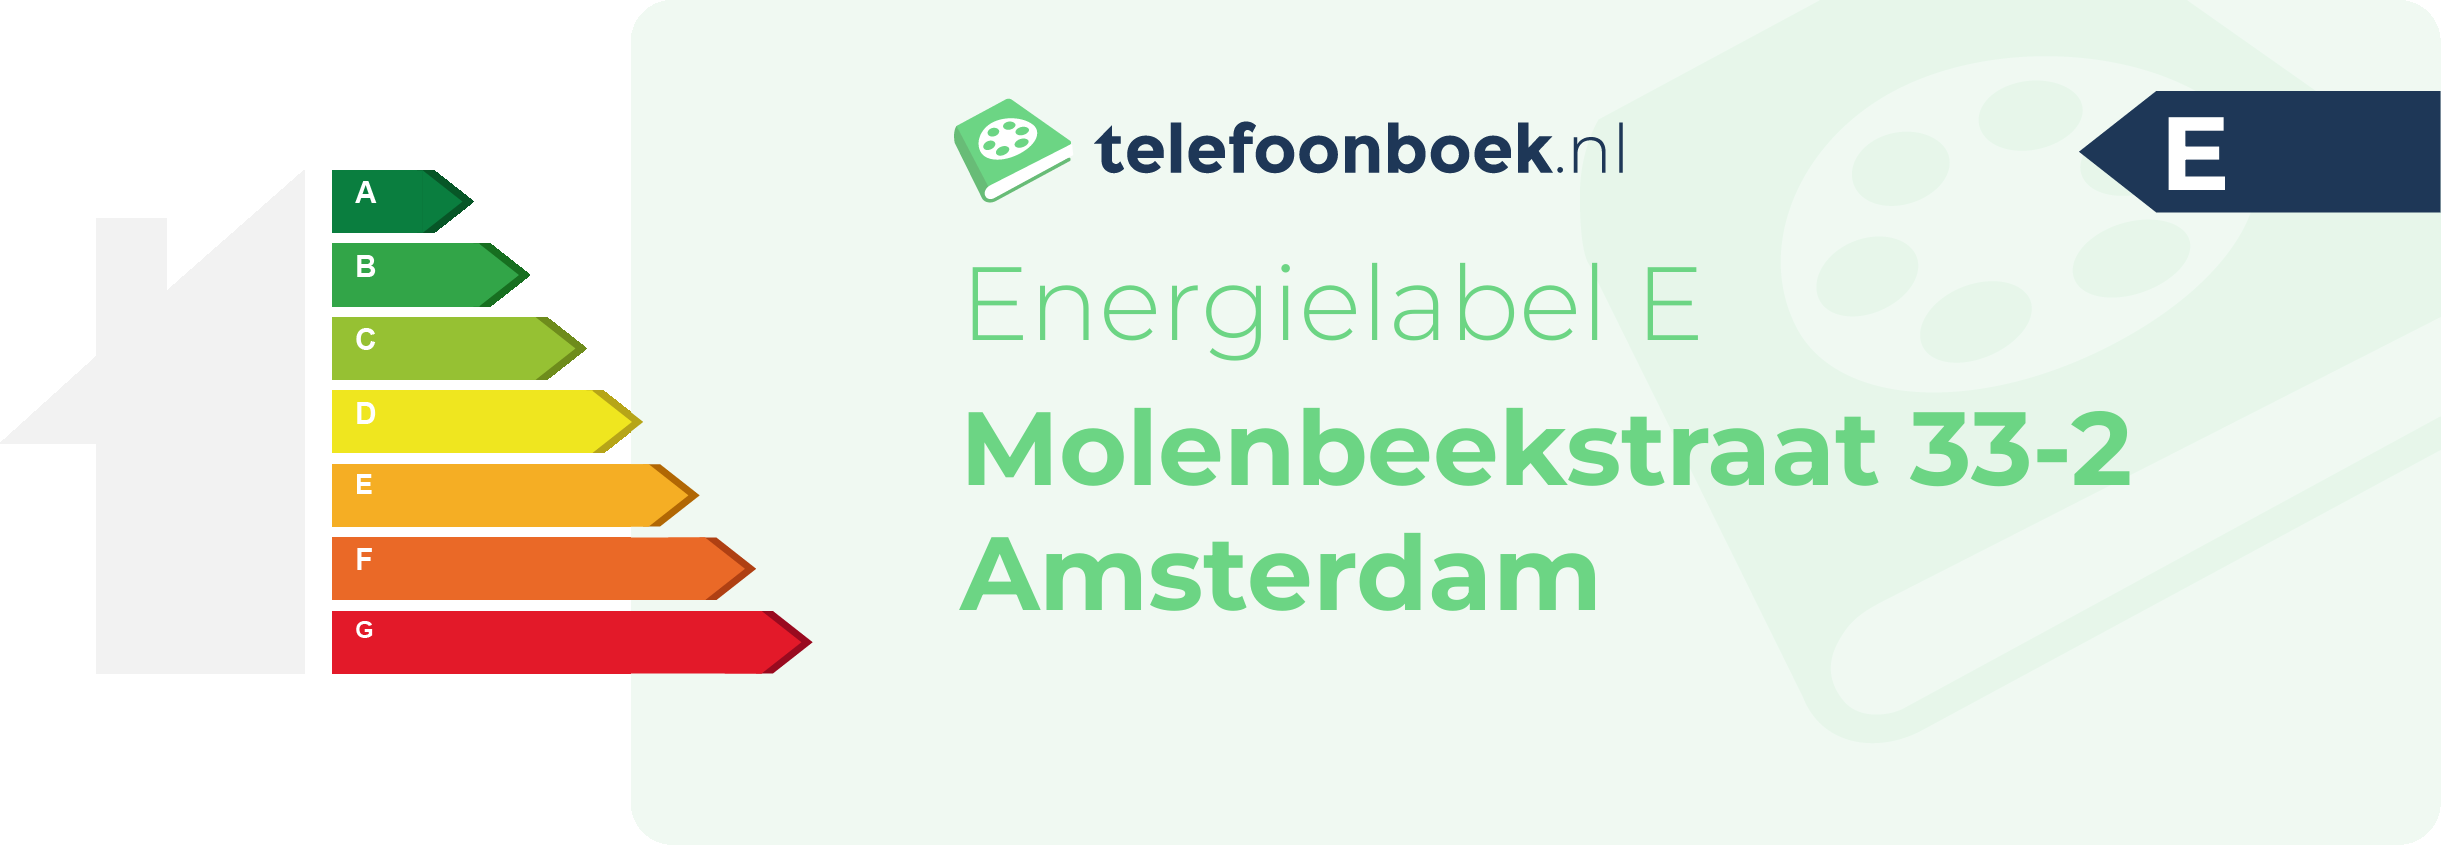 Energielabel Molenbeekstraat 33-2 Amsterdam